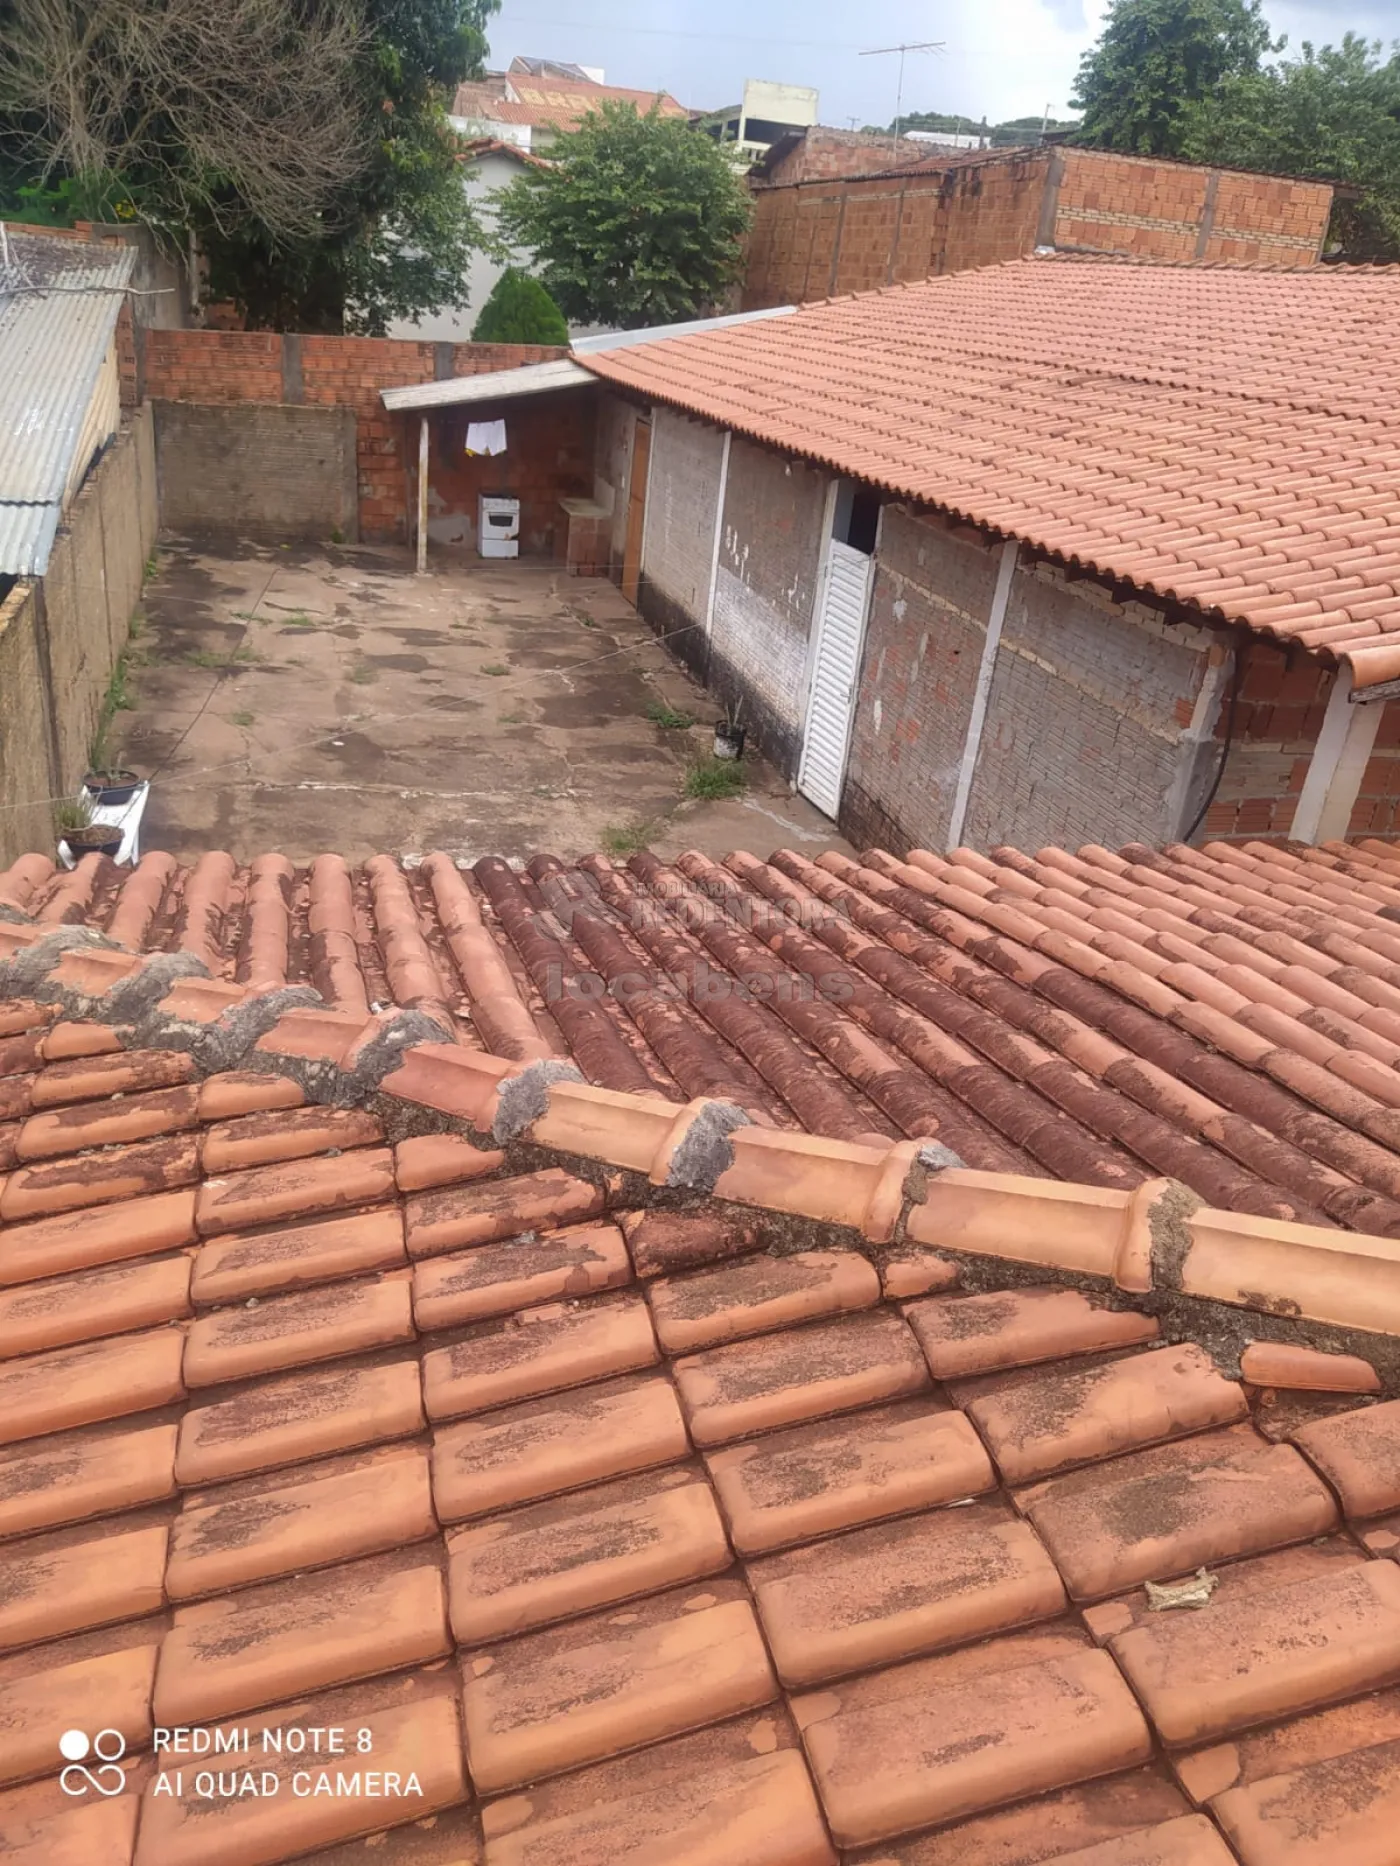 Comprar Casa / Padrão em São José do Rio Preto R$ 320.000,00 - Foto 6